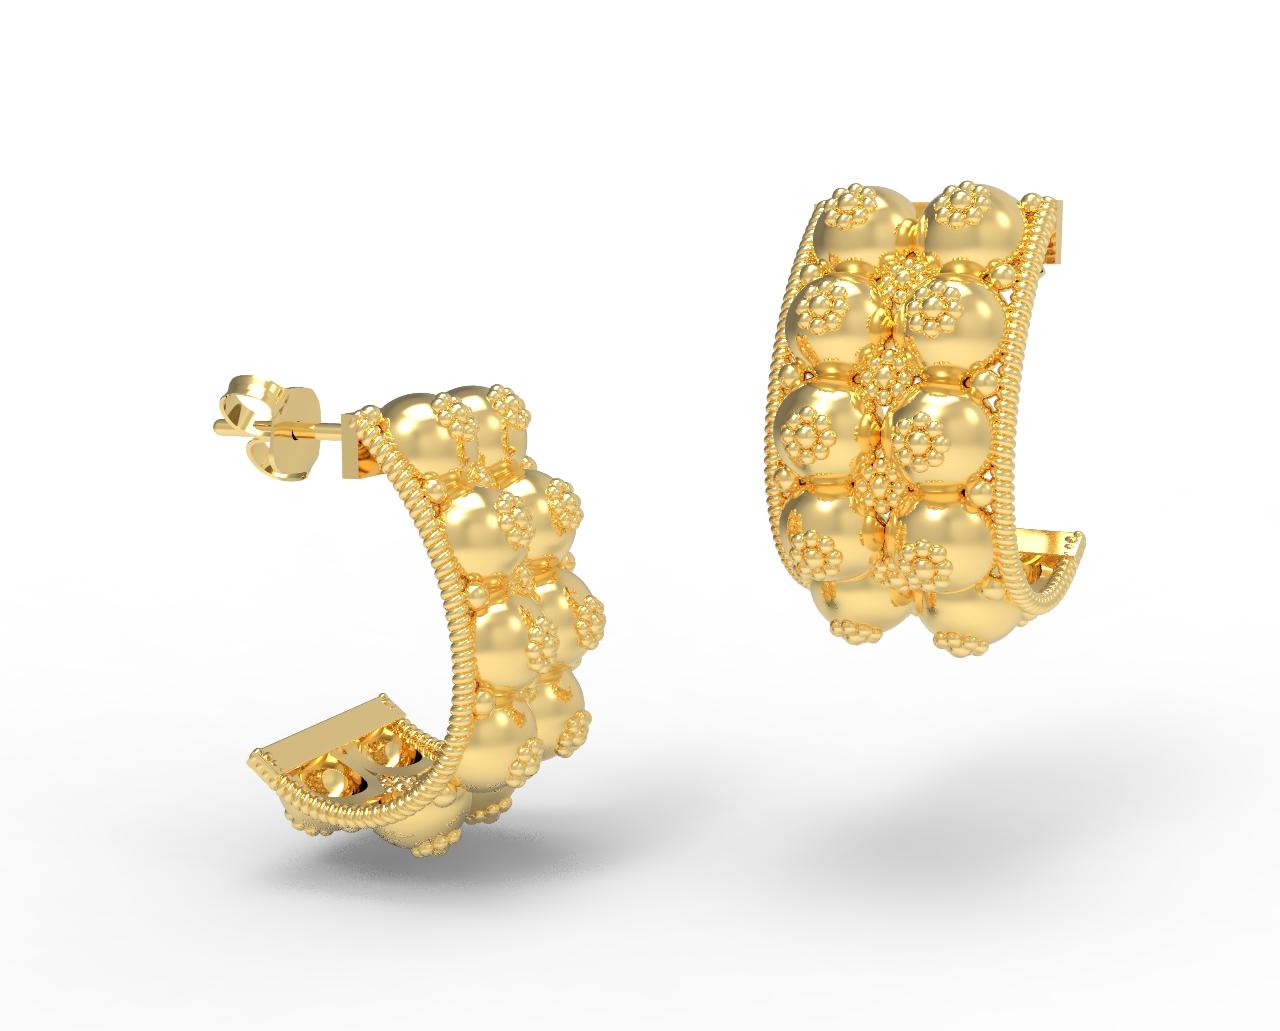 Boucles d'oreilles en or 22 carats Baule par Romae Jewelry - Inspirées d'un ancien design étrusque. Le mot italien 